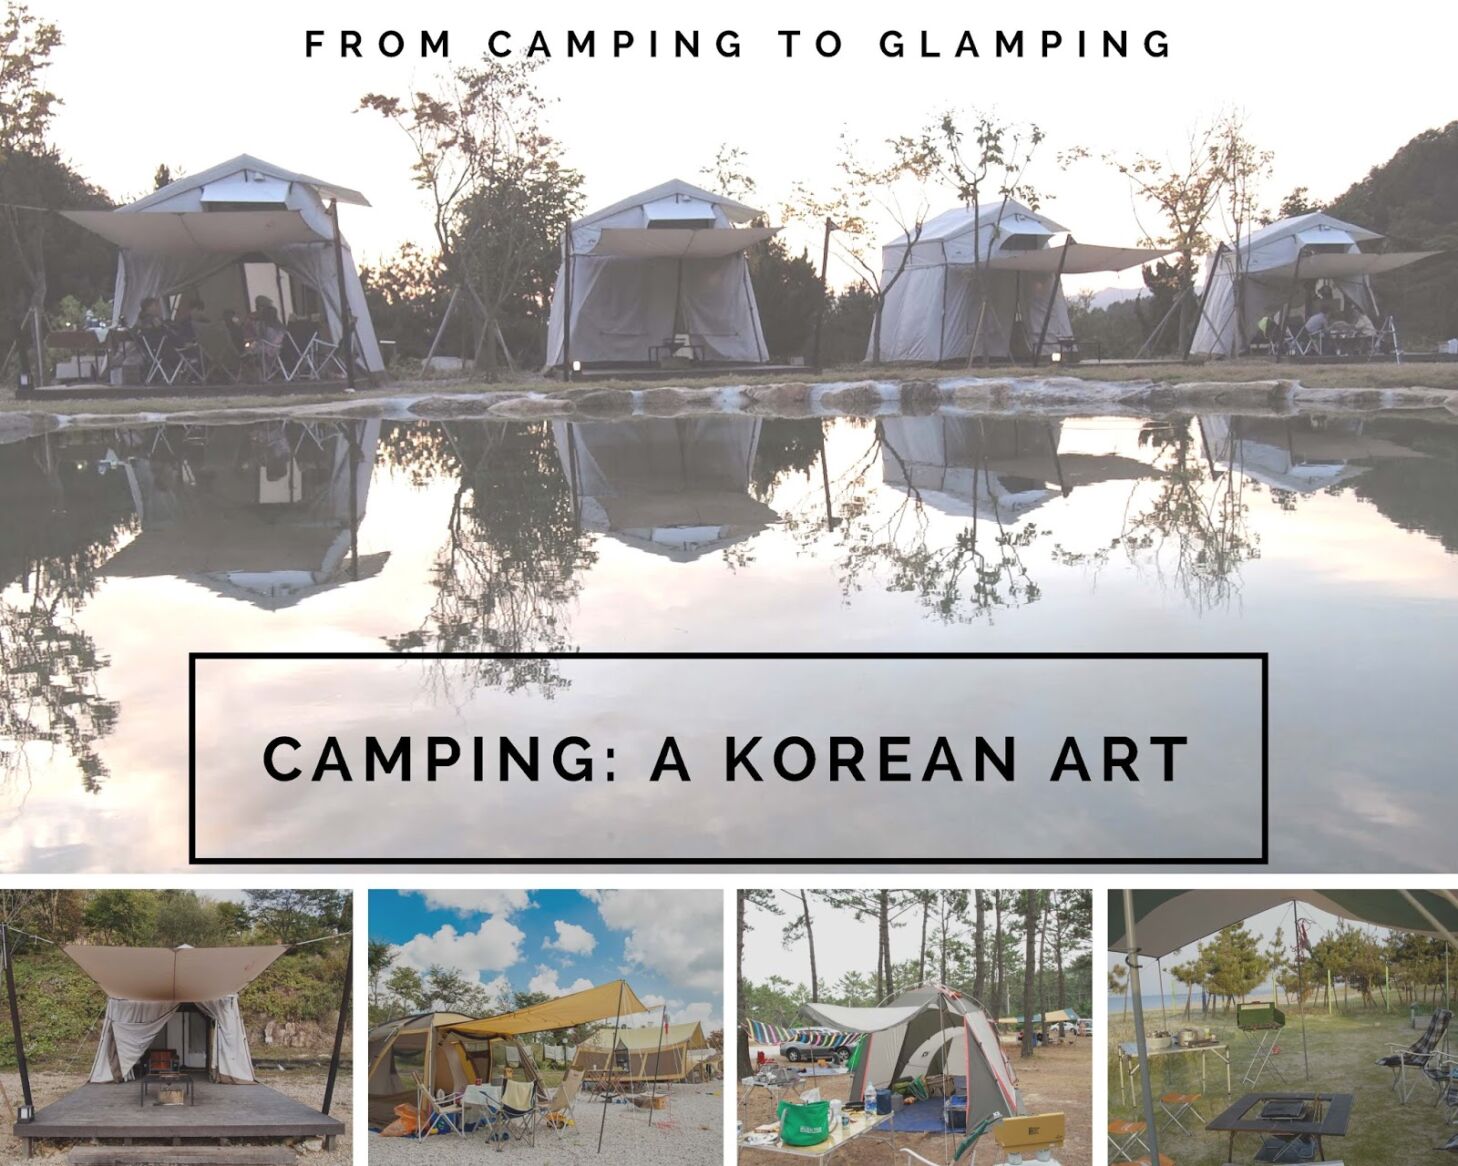 เทรนด์เกาหลีแคมป์ “Glamping” เรื่องน่ารู้ของนักเดินทาง